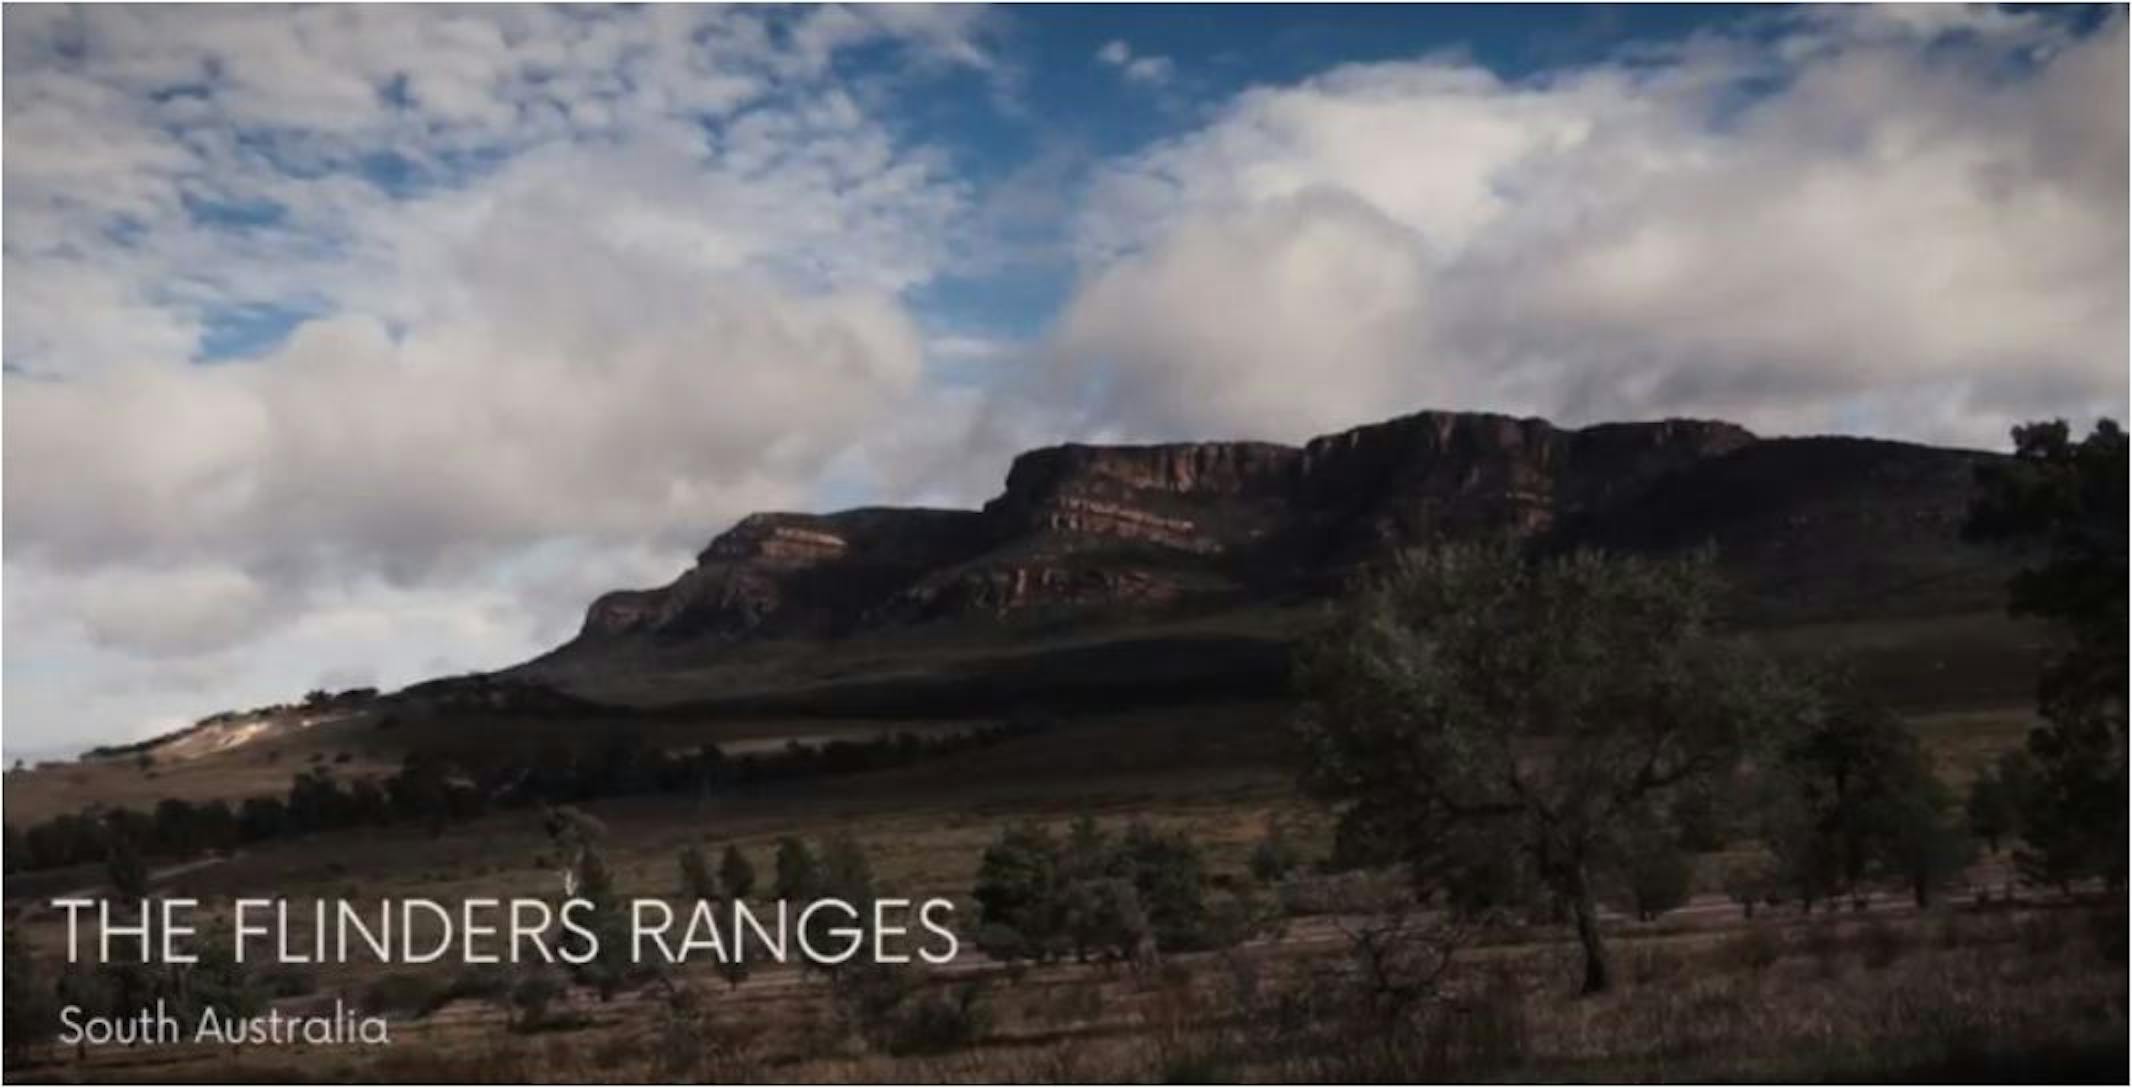 Screen Grab: Flinders Ranges Australia